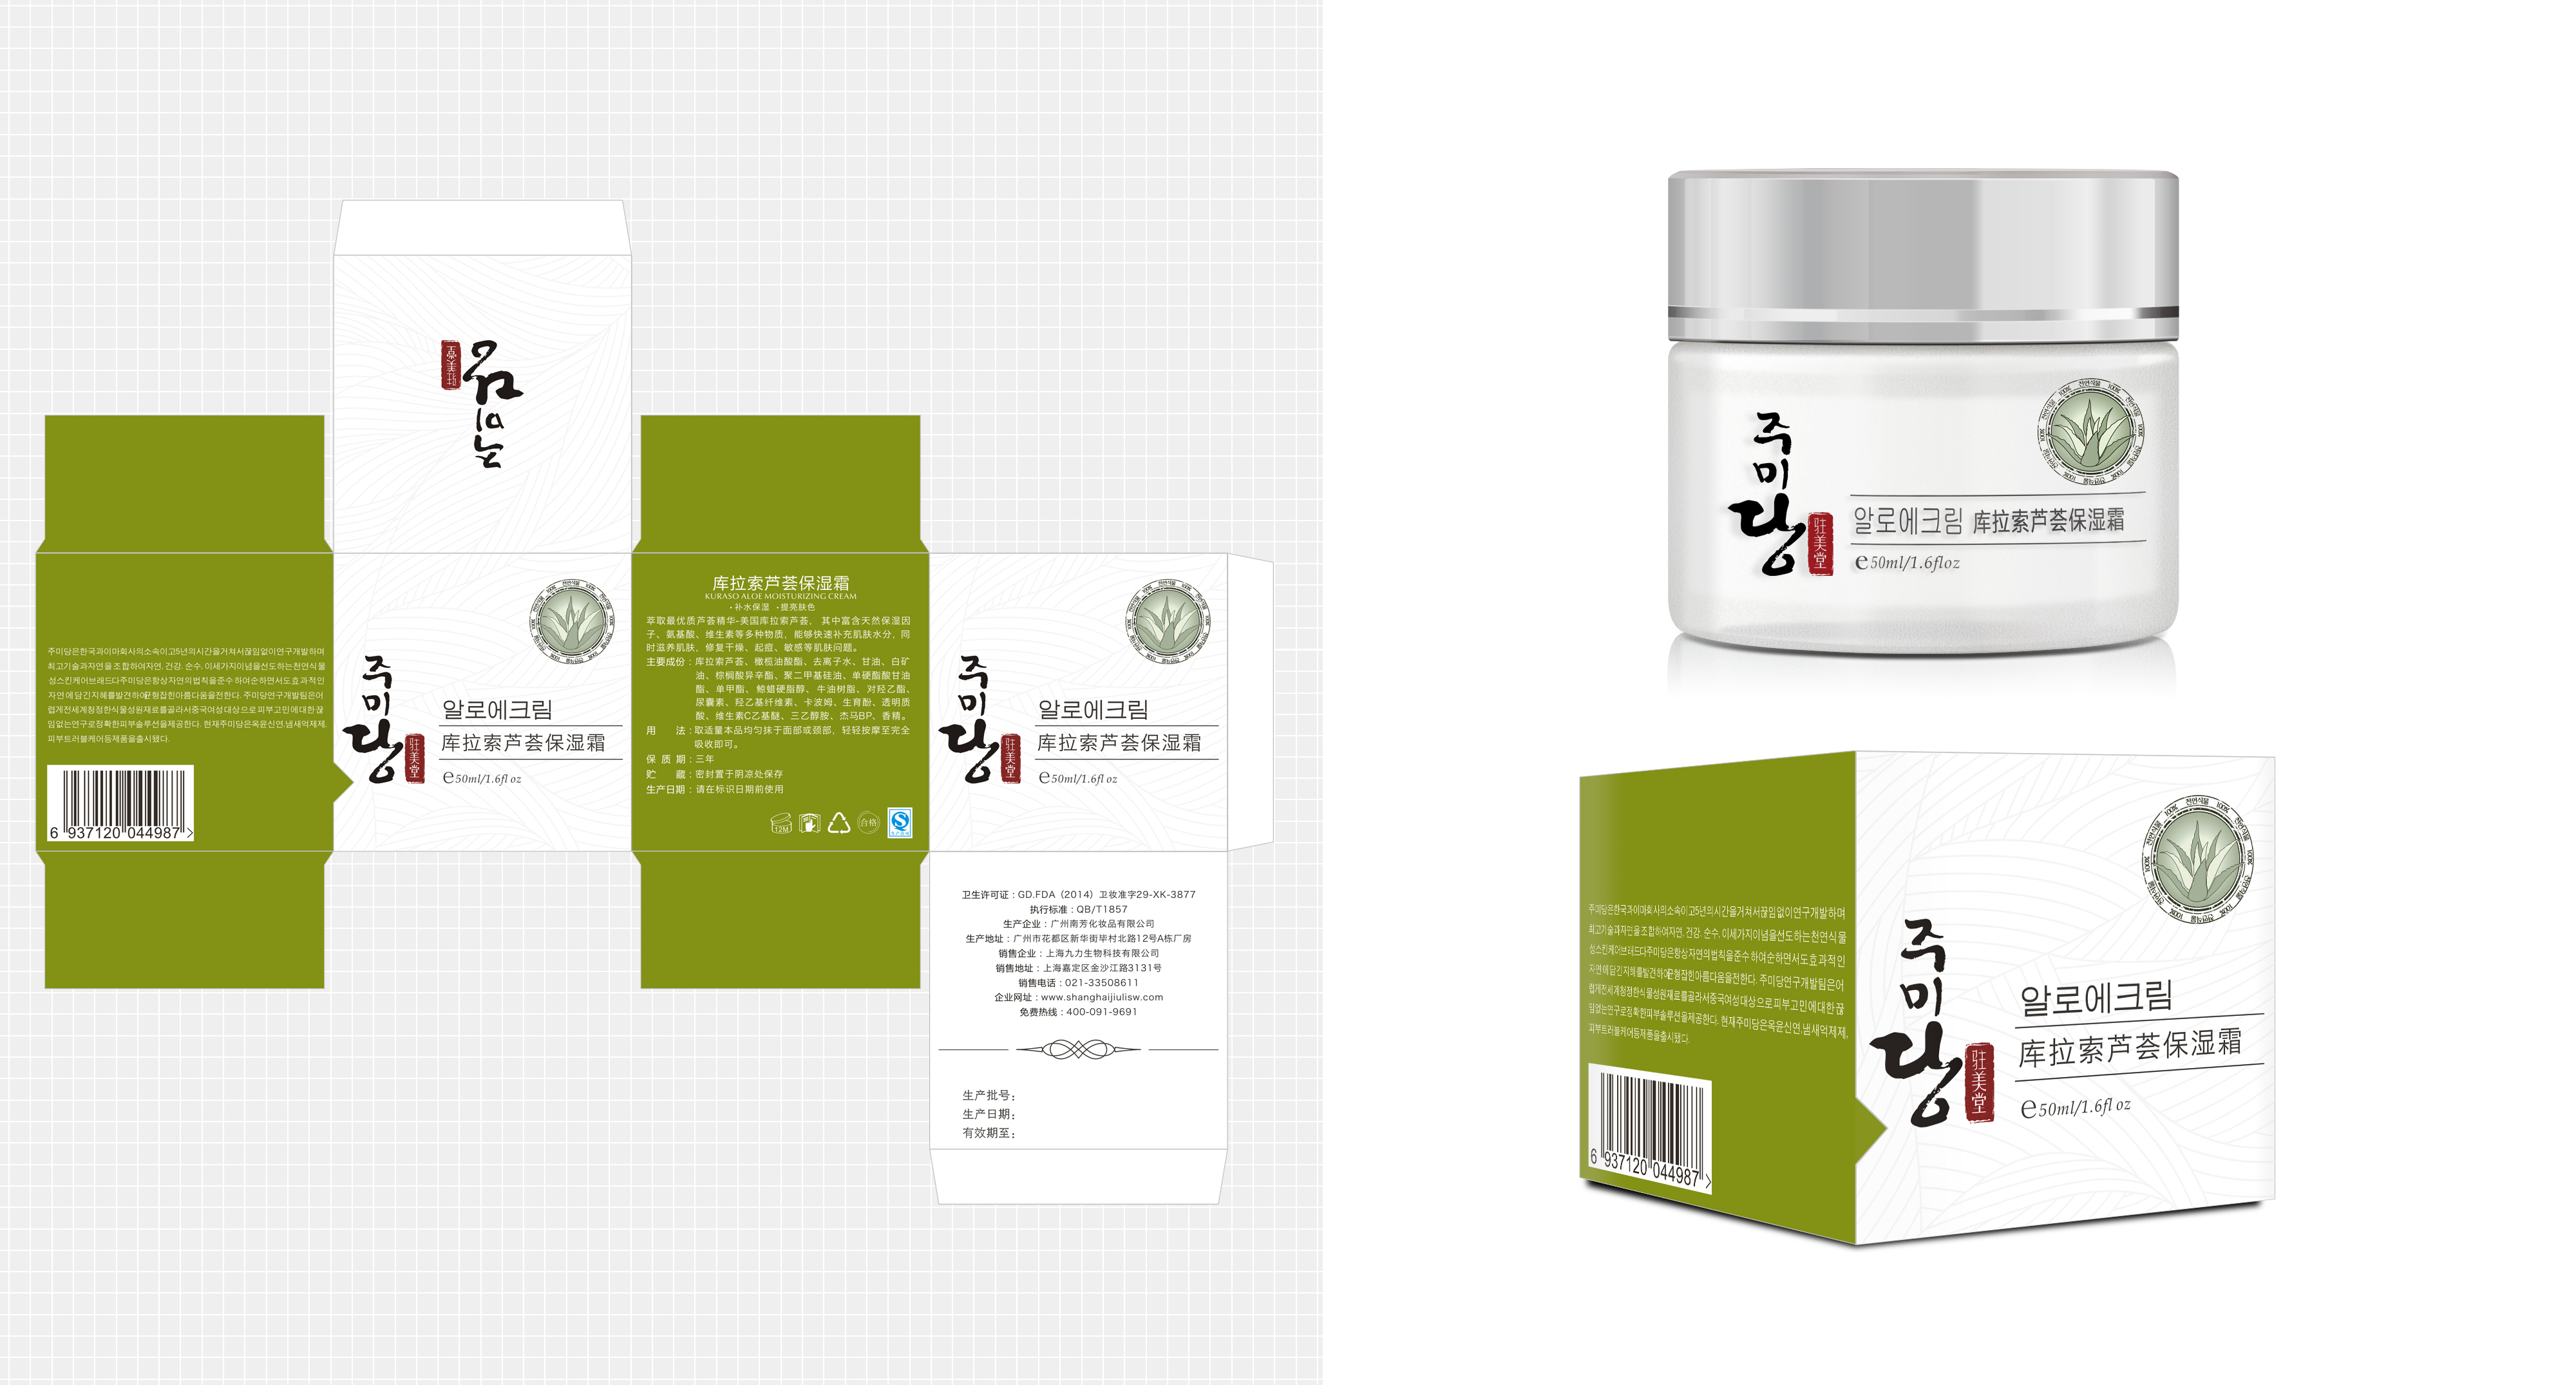 护肤系列产品 芦荟面霜 产品包装升级 包装设计